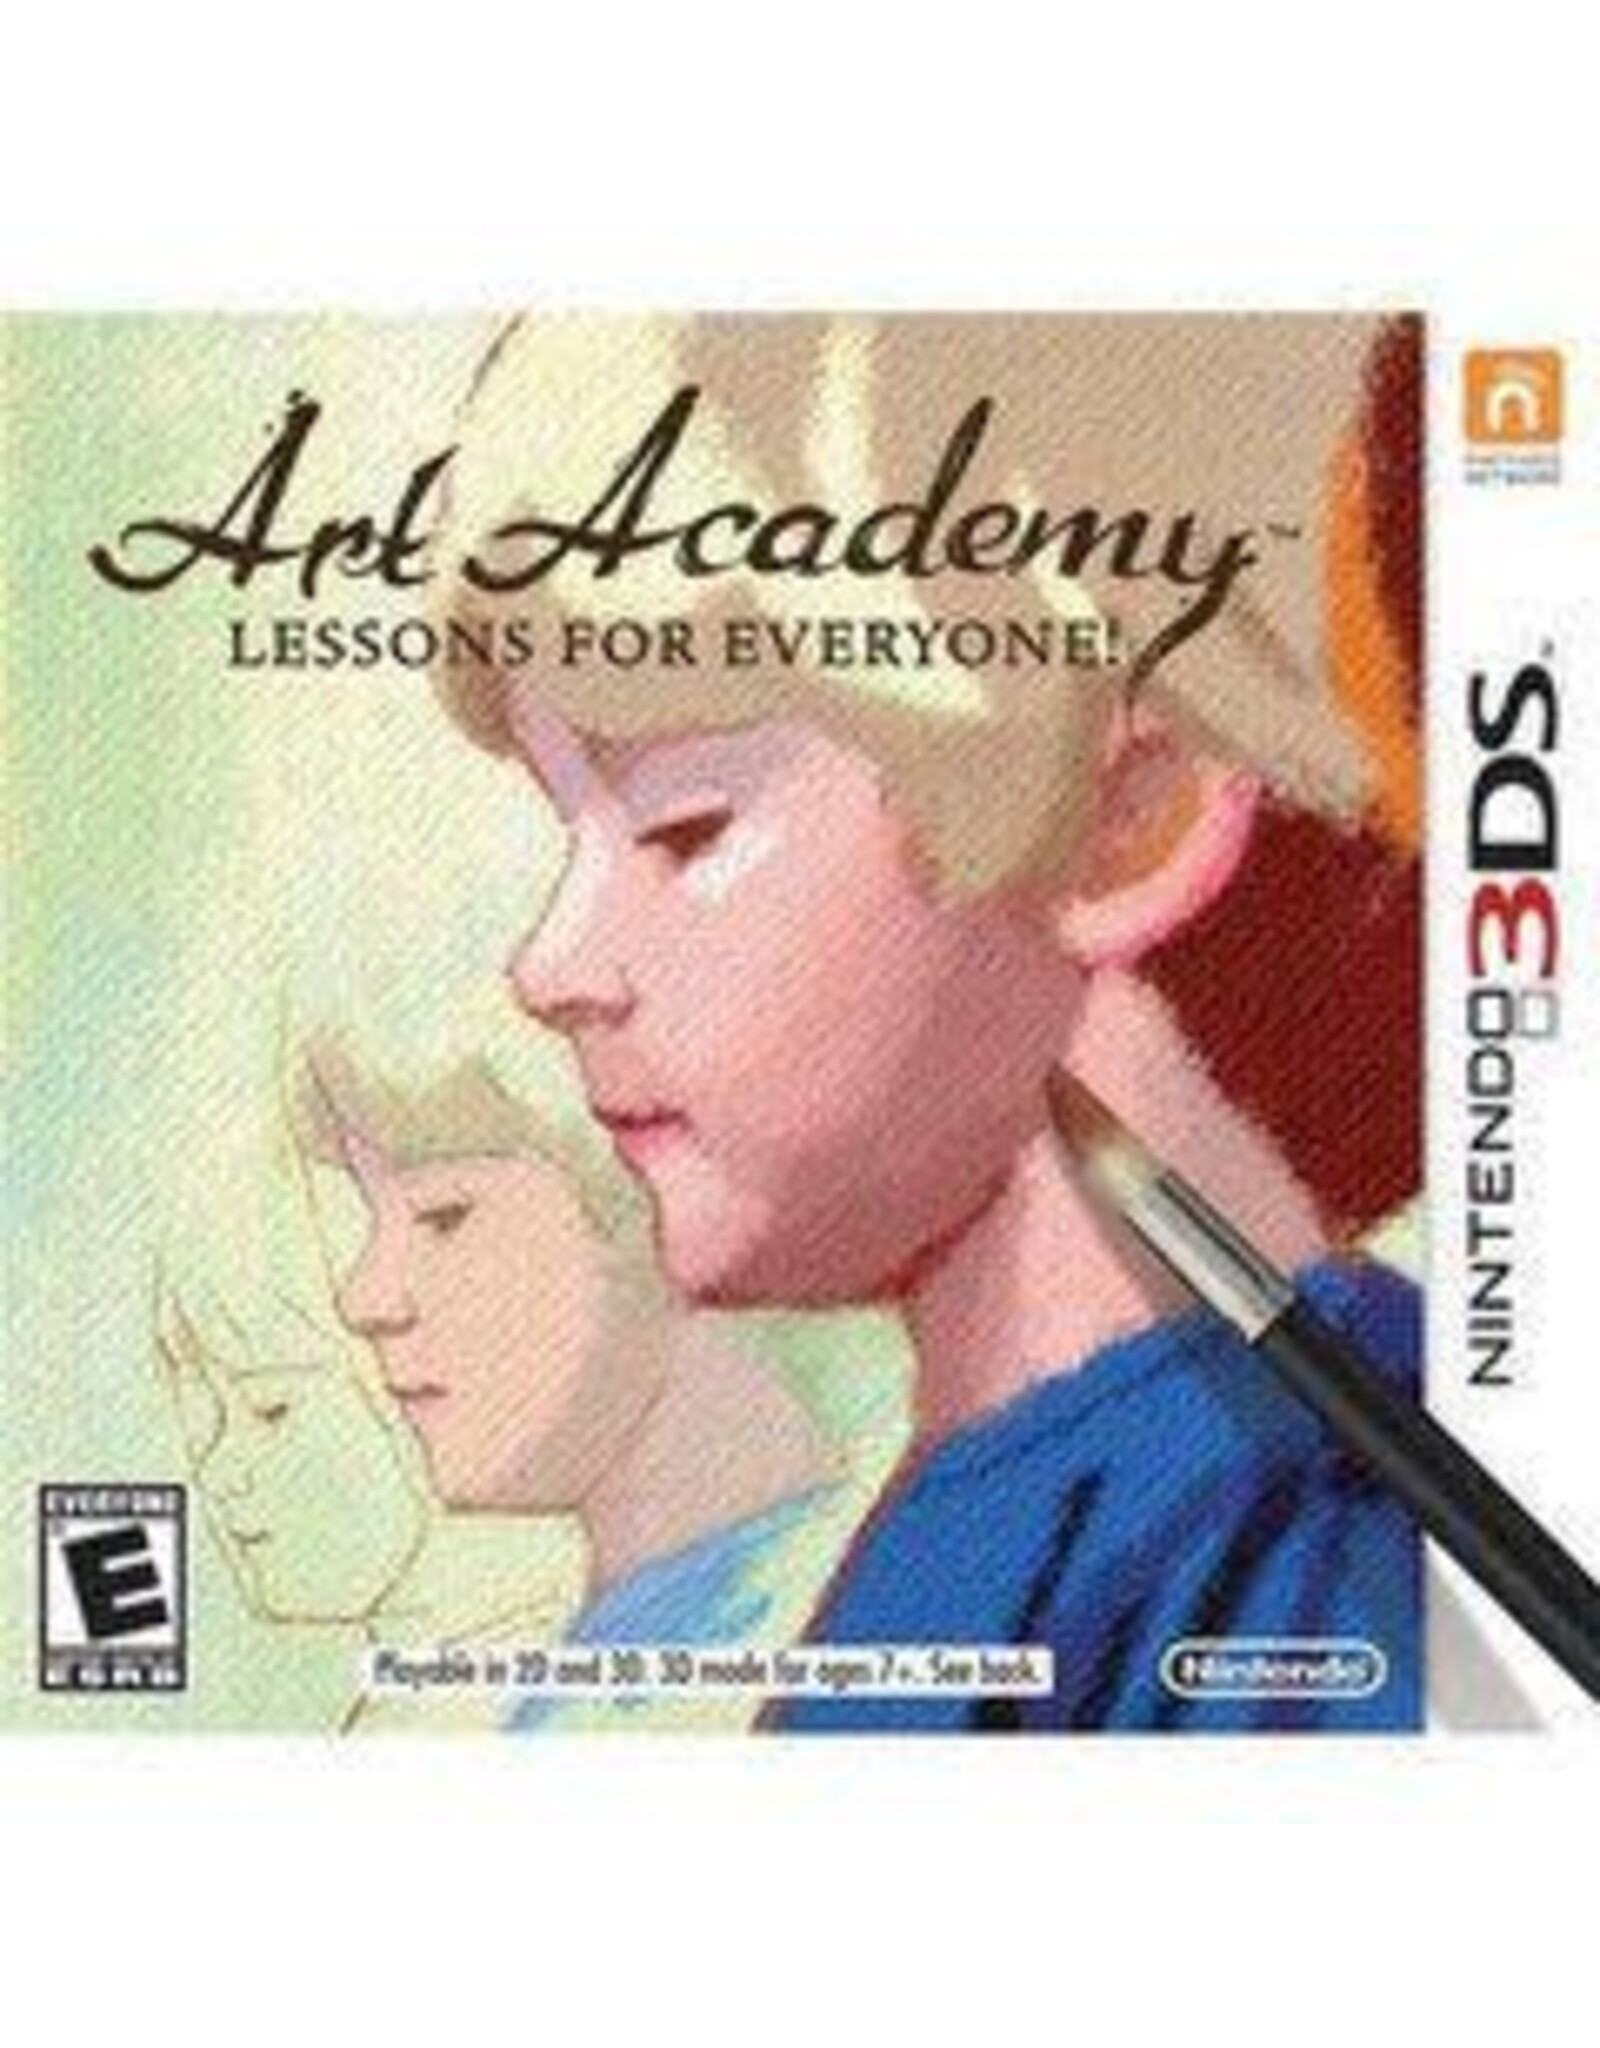 Nintendo 3DS Art Academy: Lessons for Everyone (CiB)